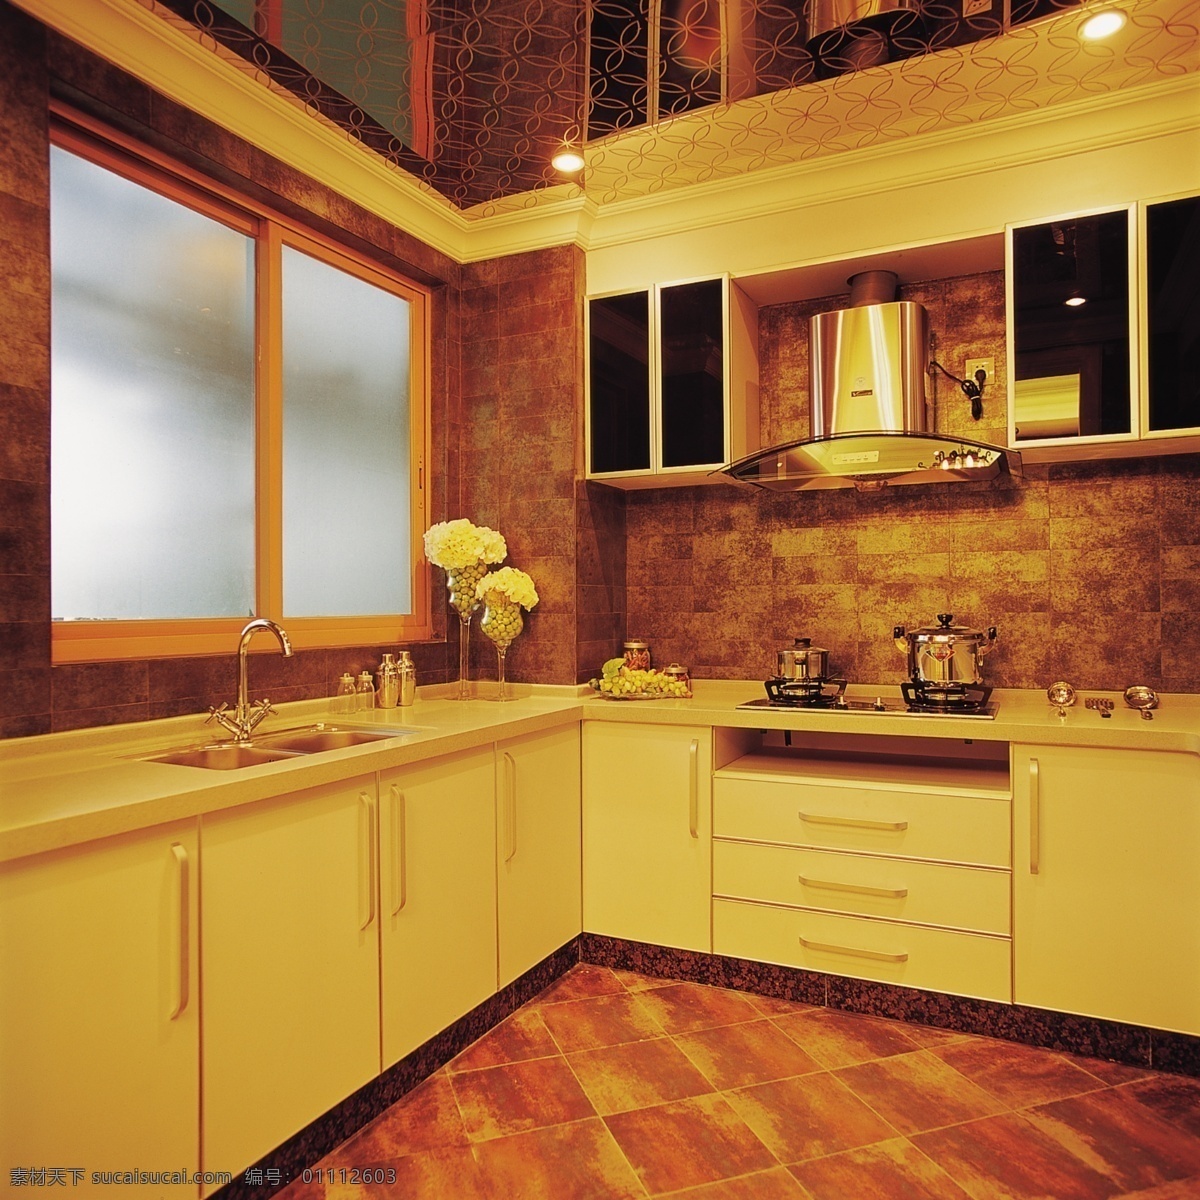 金色 豪华 厨房 装修设计 室内设计 效果图 时尚家居 厨房装潢设计 金色豪华风格 环境家居